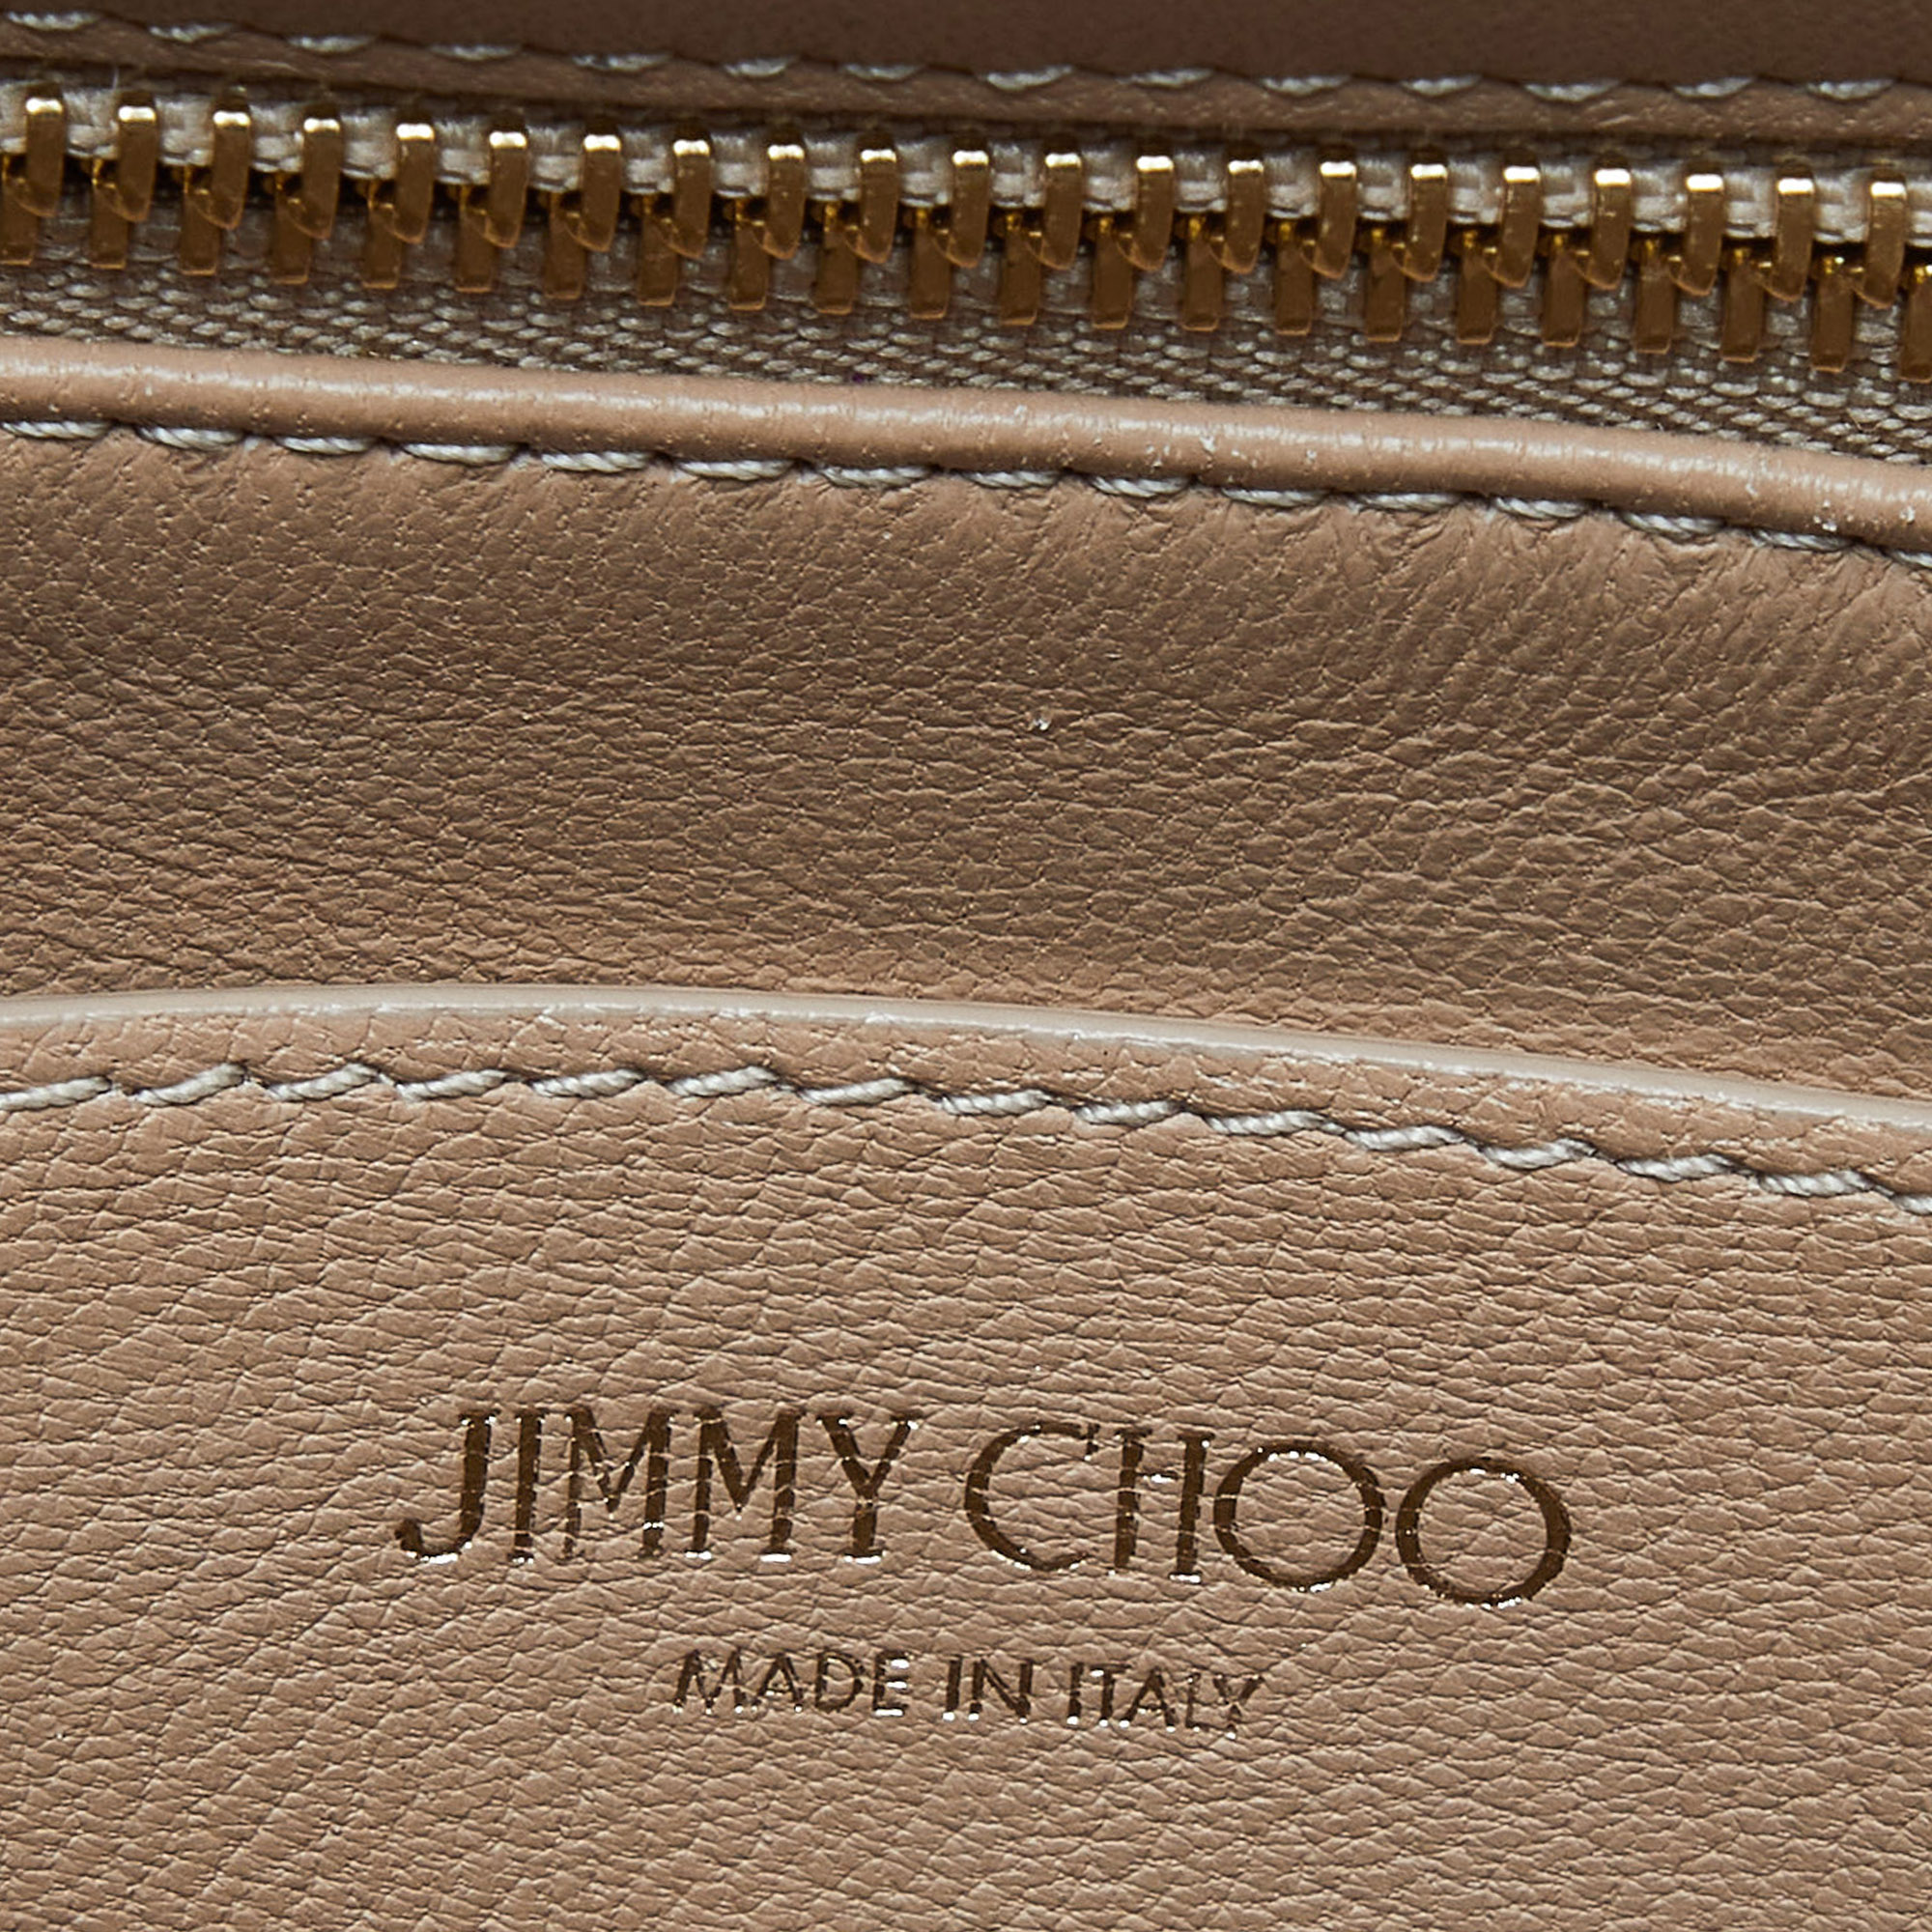 Jimmy Choo Metallic Gold Leather Rebel Shoulder Bag